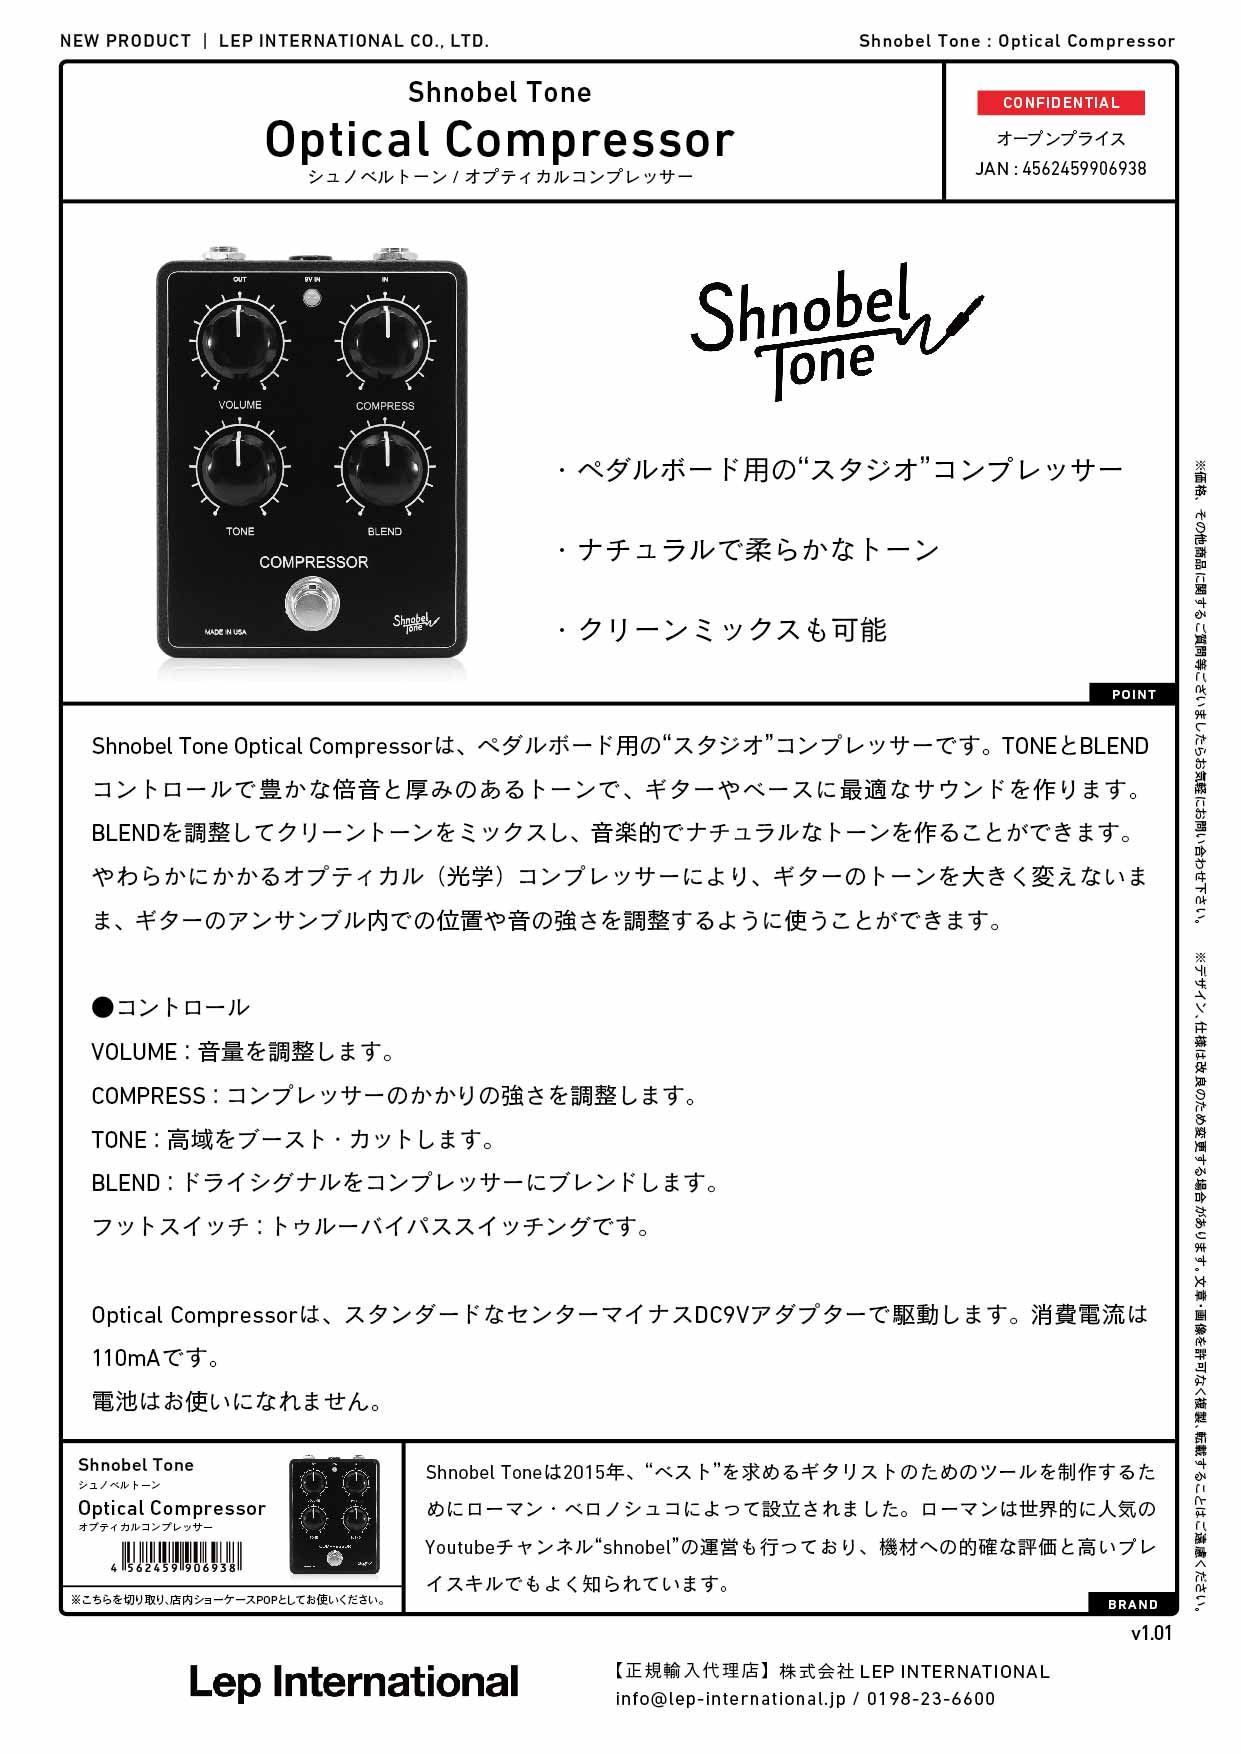 Shnobel Tone / Optical Compressor